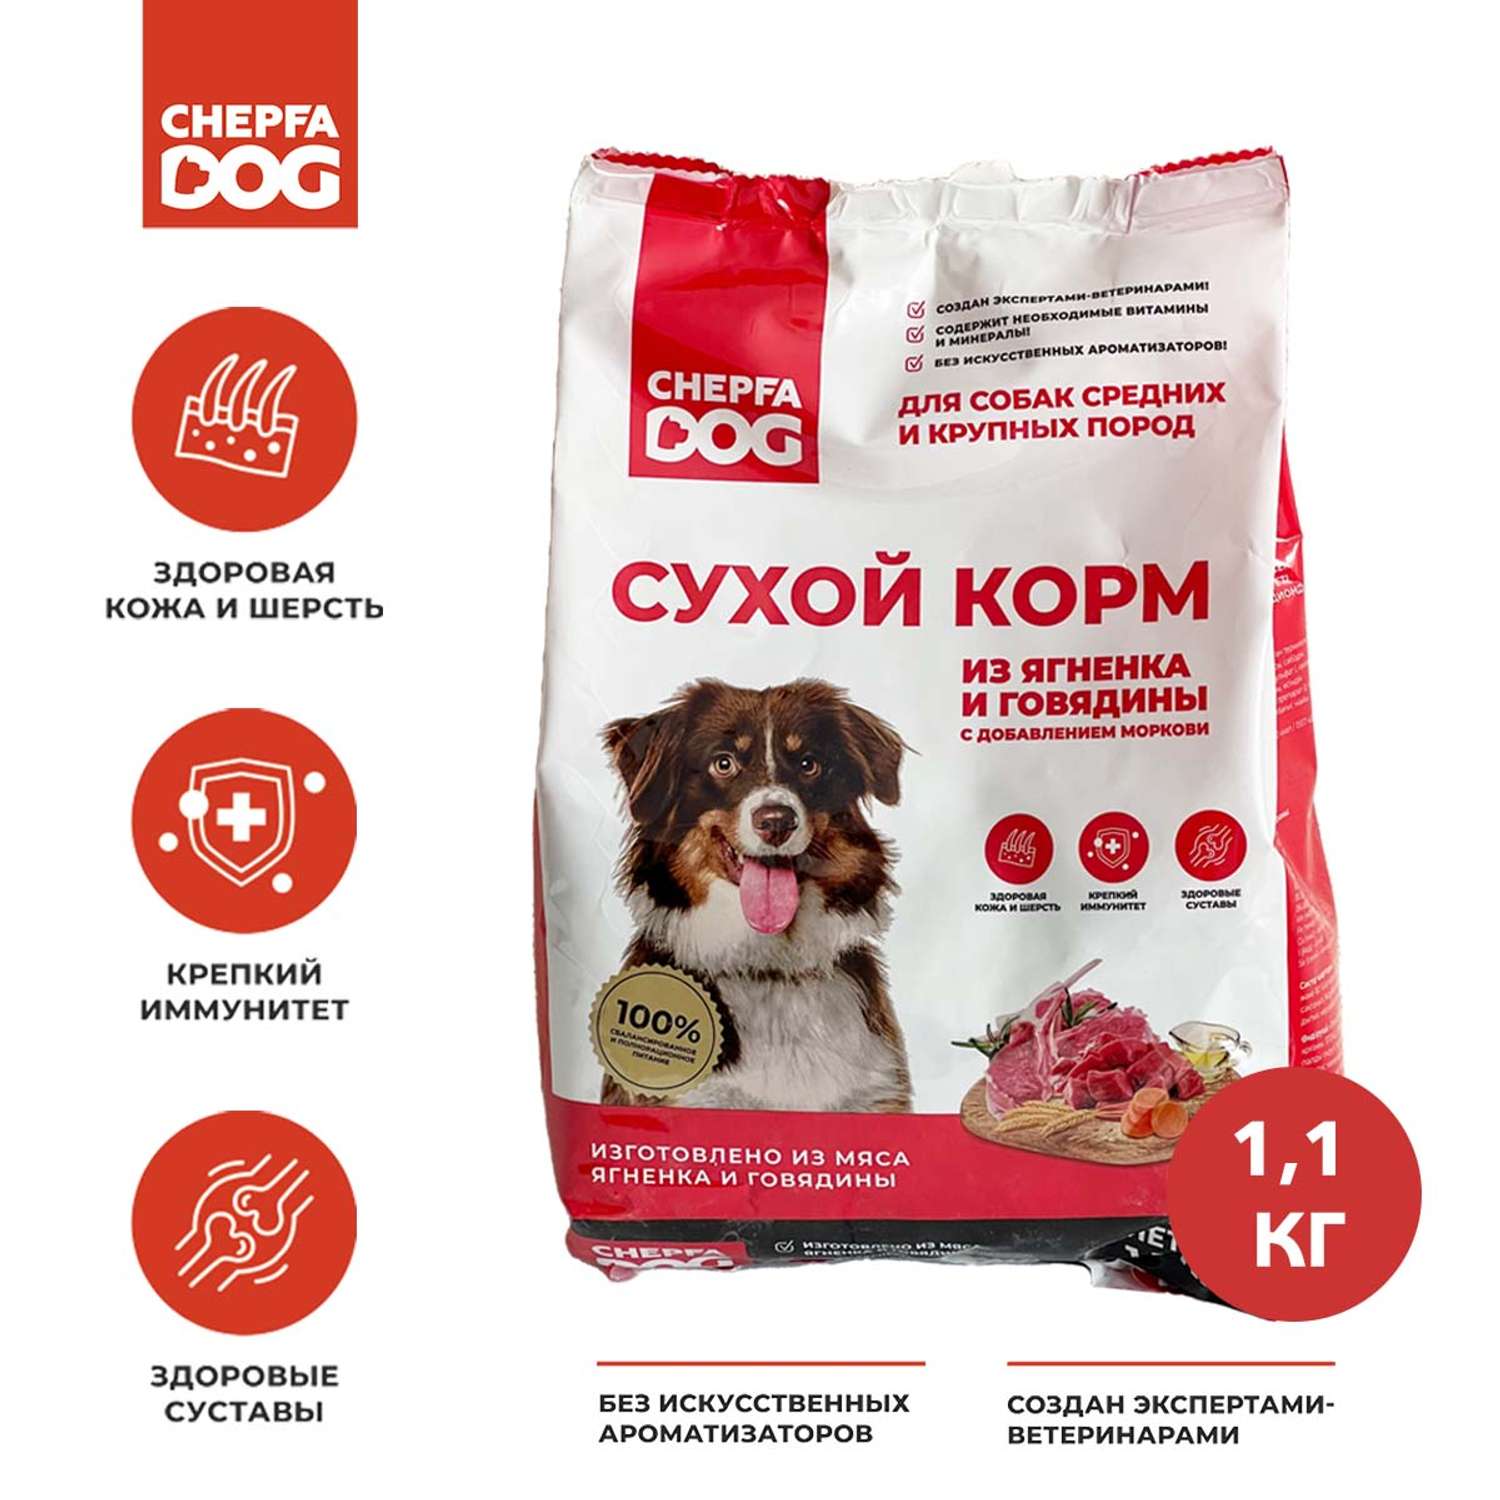 Сухой корм Chepfa Dog полнорационный ягненок и говядина 1.1 кг для взрослых собак средних и крупных пород - фото 2